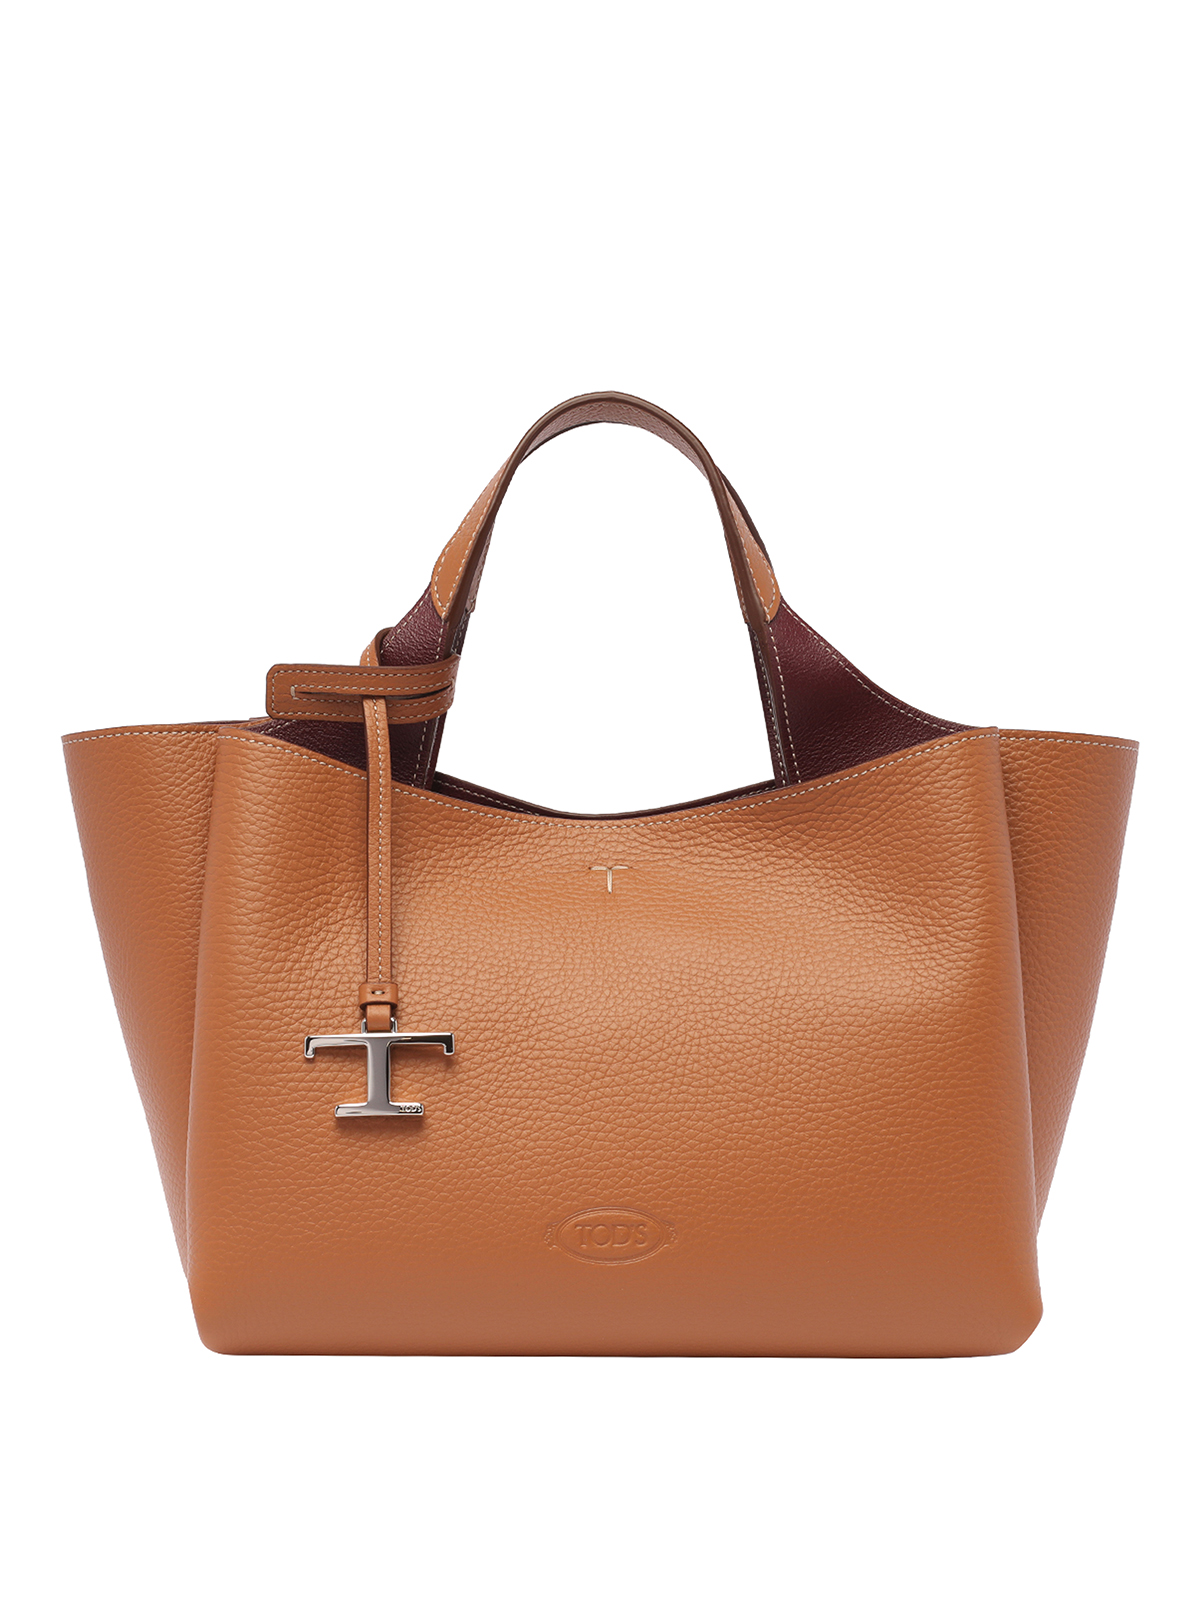 Tod's Tods Handbag In Brown